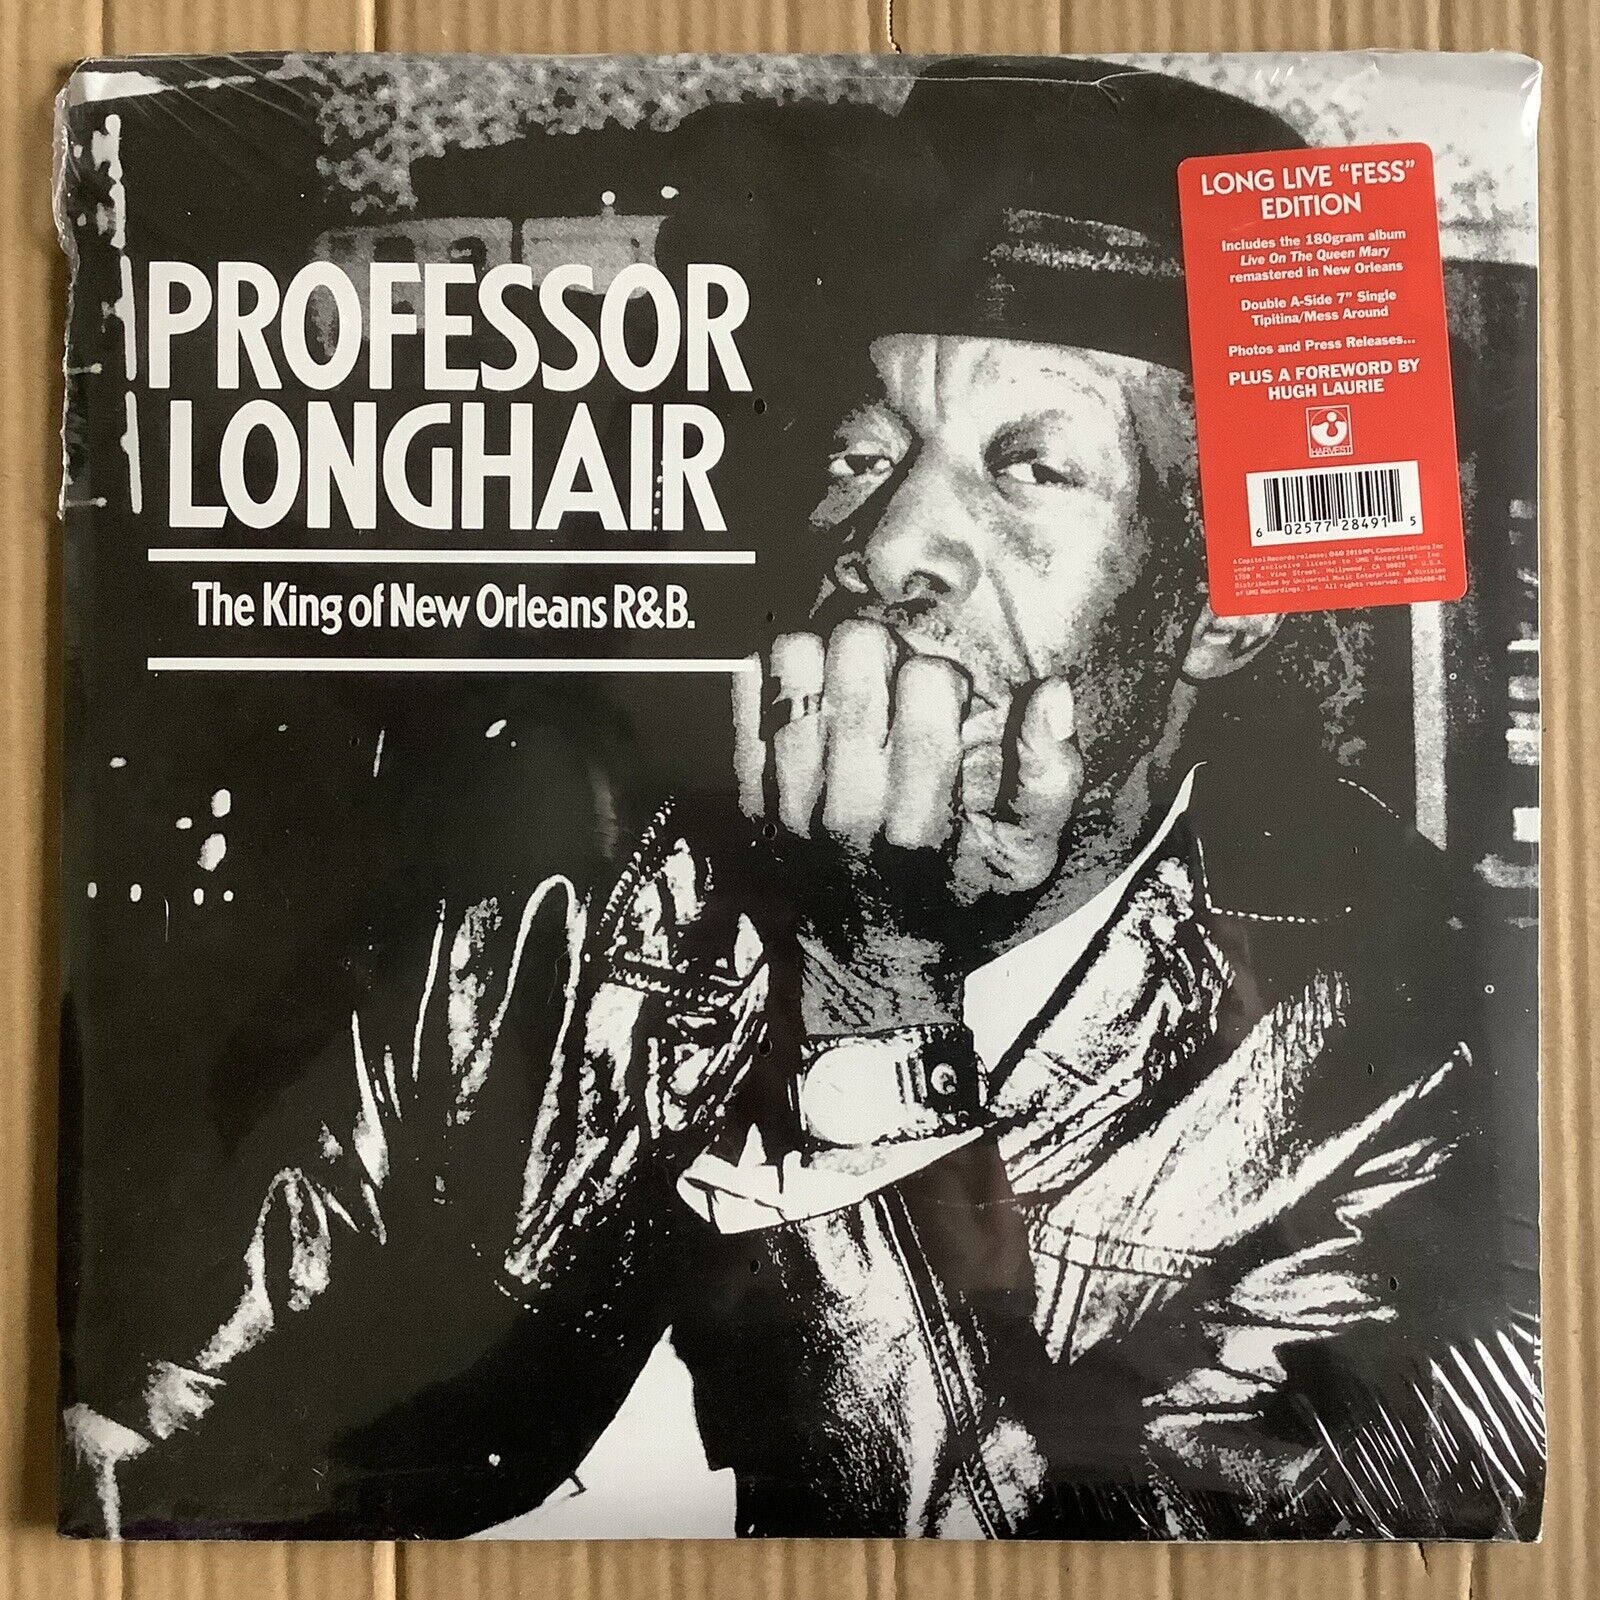 Professorlonghair Live På Queen Mary Album Cover. Wallpaper